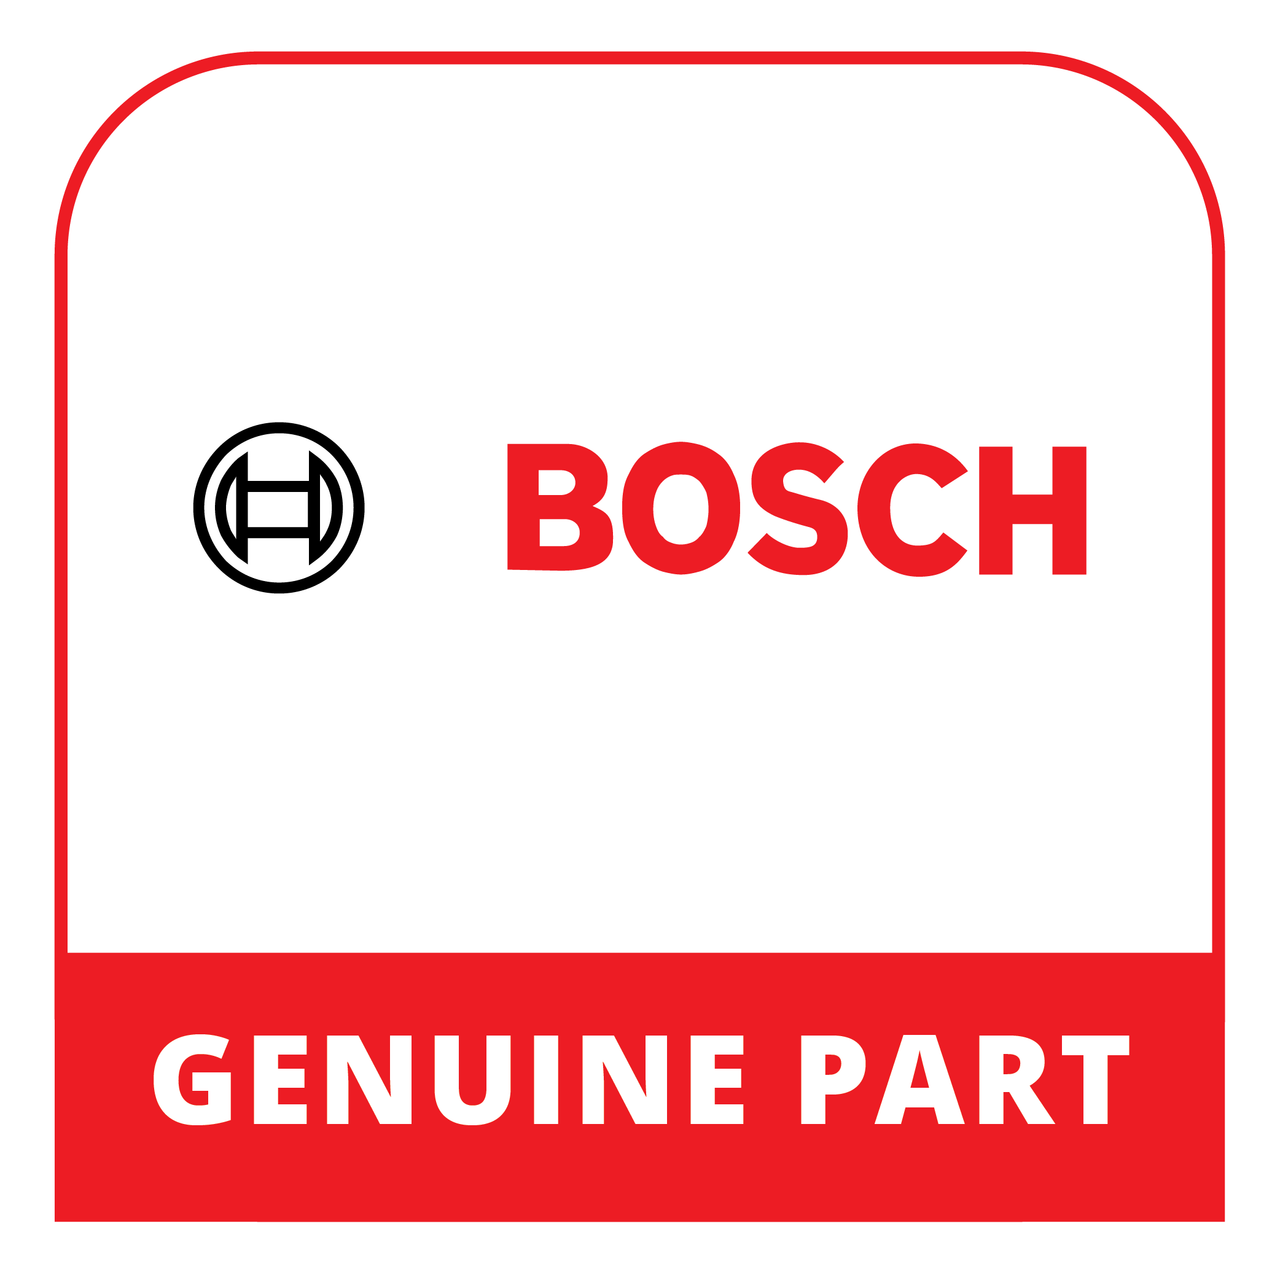 Bosch (Thermador) 20000234 - Door - Genuine Bosch (Thermador) Part